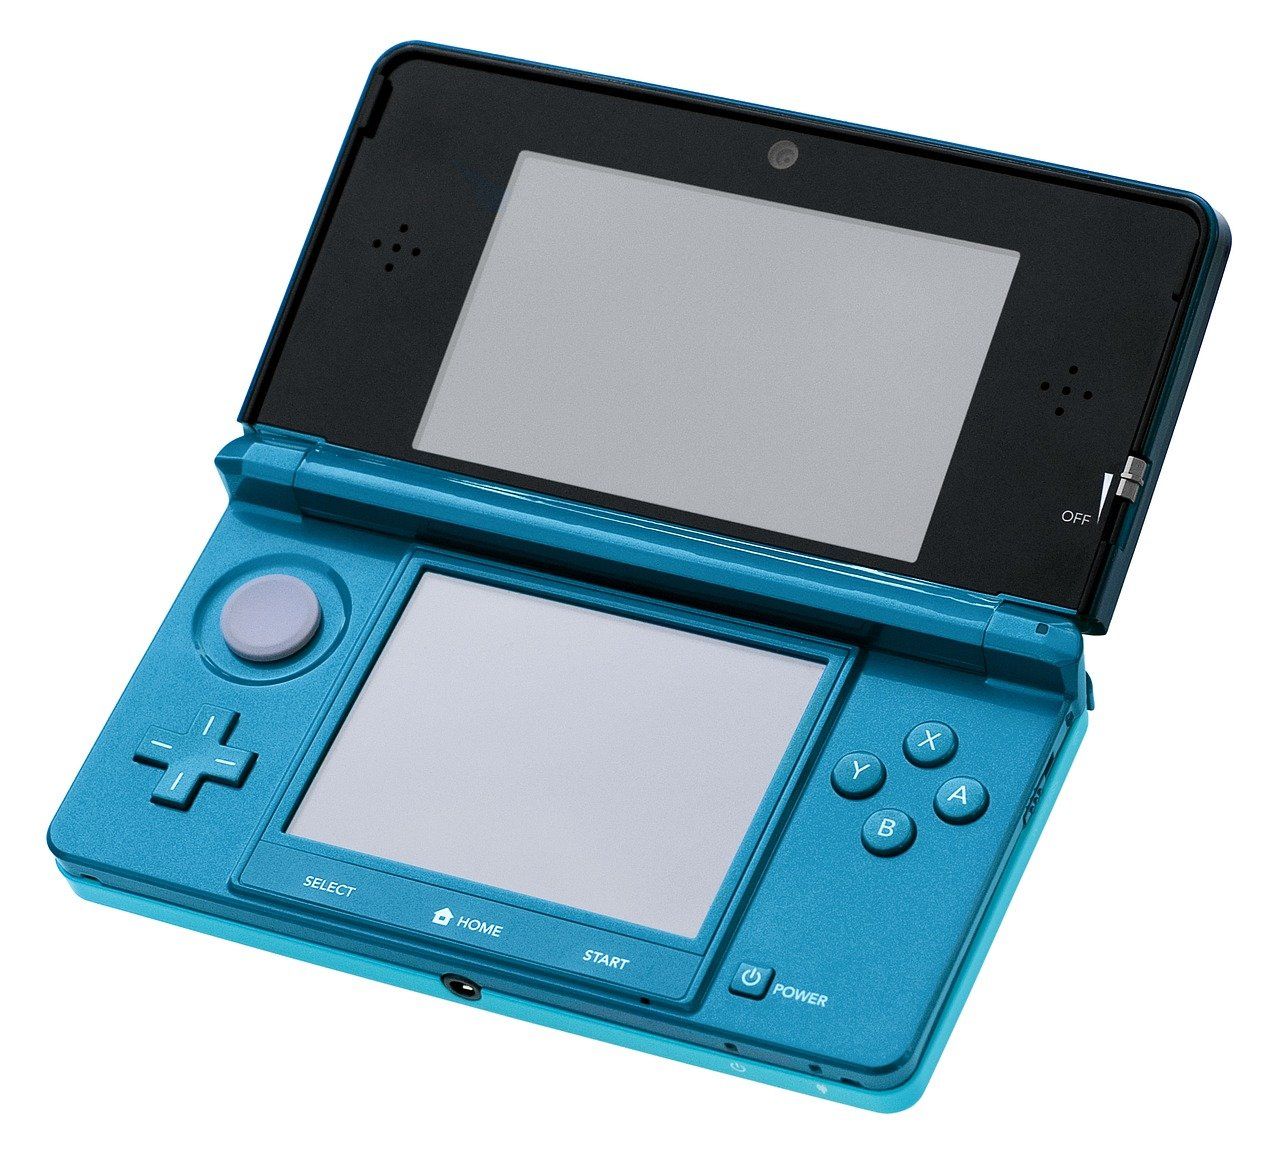 Aqua Blue Original Nintendo 3DS on White Background